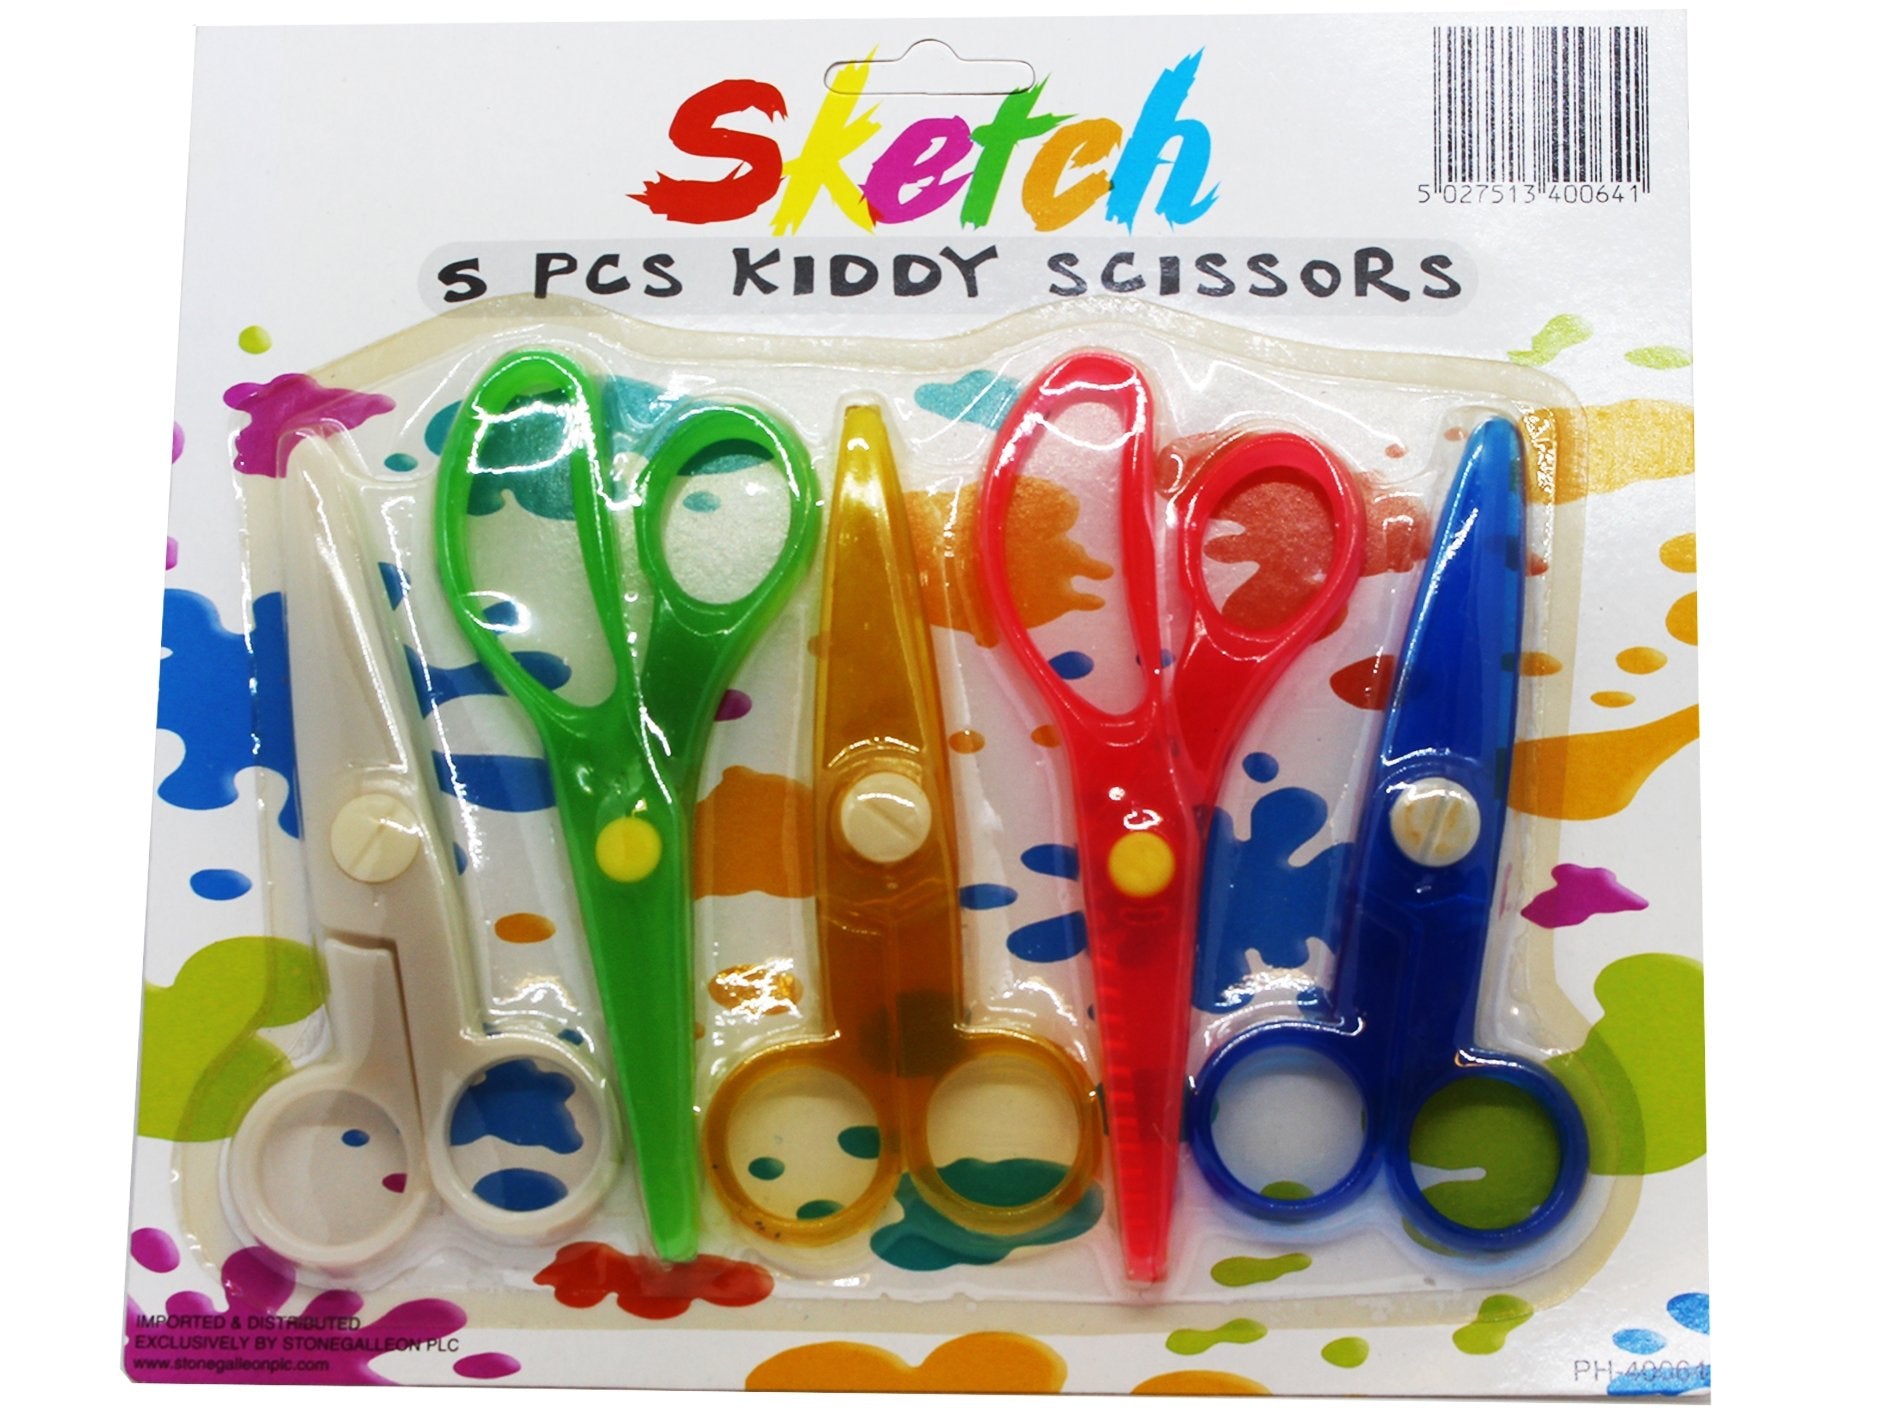 Sketch 5pcs Kiddy Scissors - VIR Wholesale